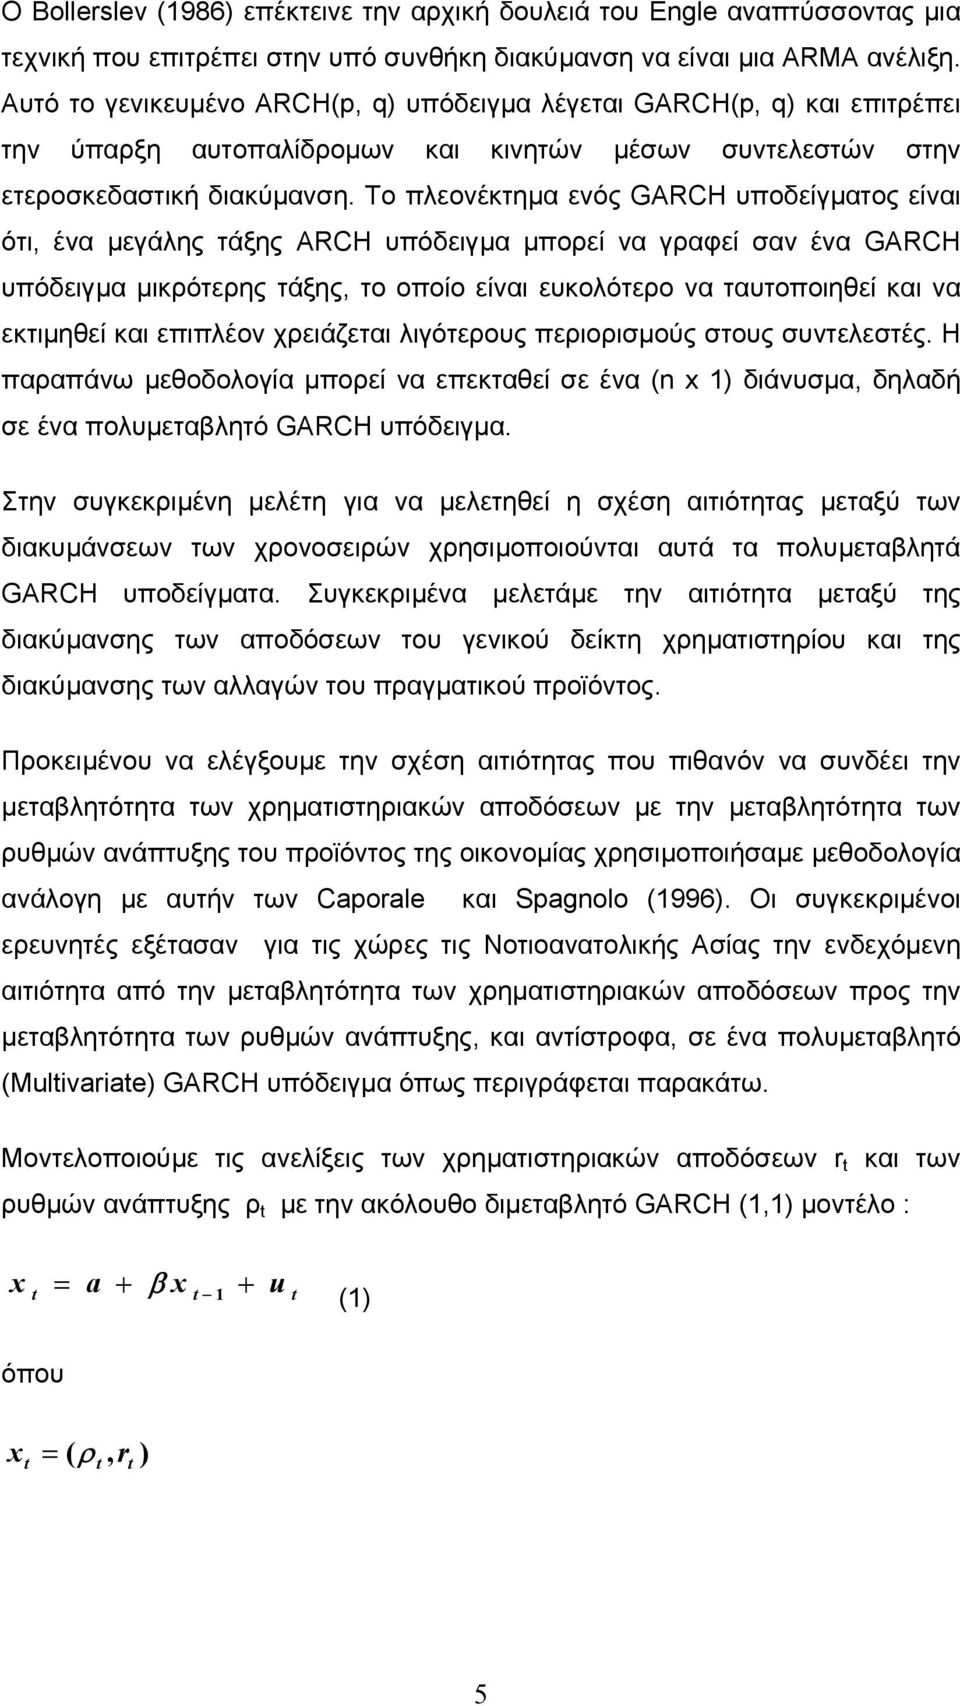 Το πλεονέκτηµα ενός GARCH υποδείγµατος είναι ότι, ένα µεγάλης τάξης ARCH υπόδειγµα µπορεί να γραφεί σαν ένα GARCH υπόδειγµα µικρότερης τάξης, το οποίο είναι ευκολότερο να ταυτοποιηθεί και να